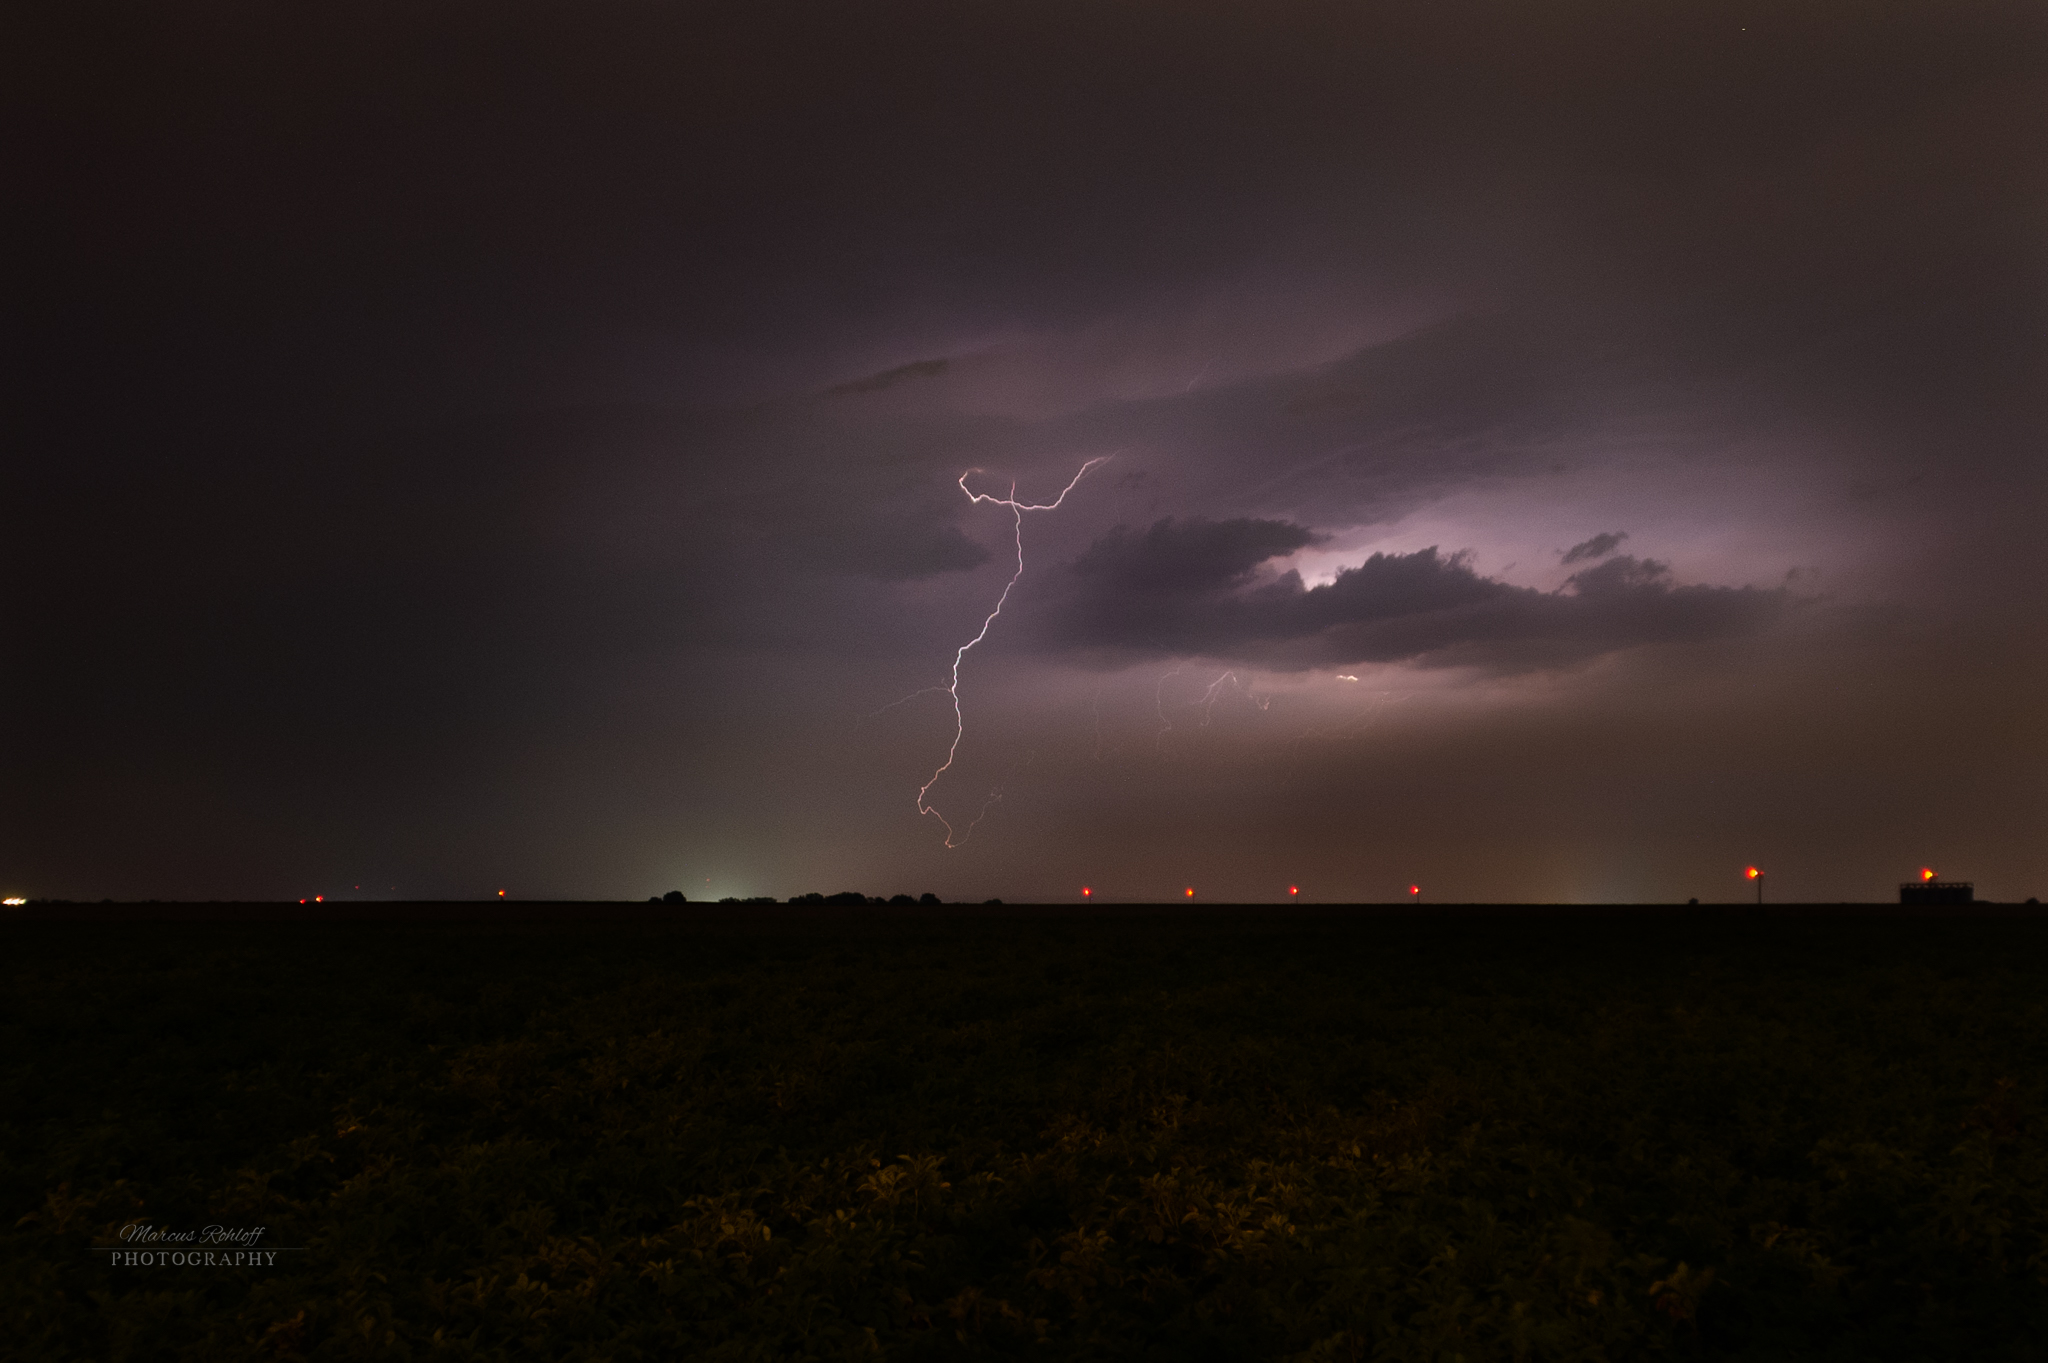 Dieses Bild ist eine Langzeitbelichtung während eines Gewitters bei Nacht und zeigt einen geschwungenen Blitz mit einem lilanen Farbakzent.